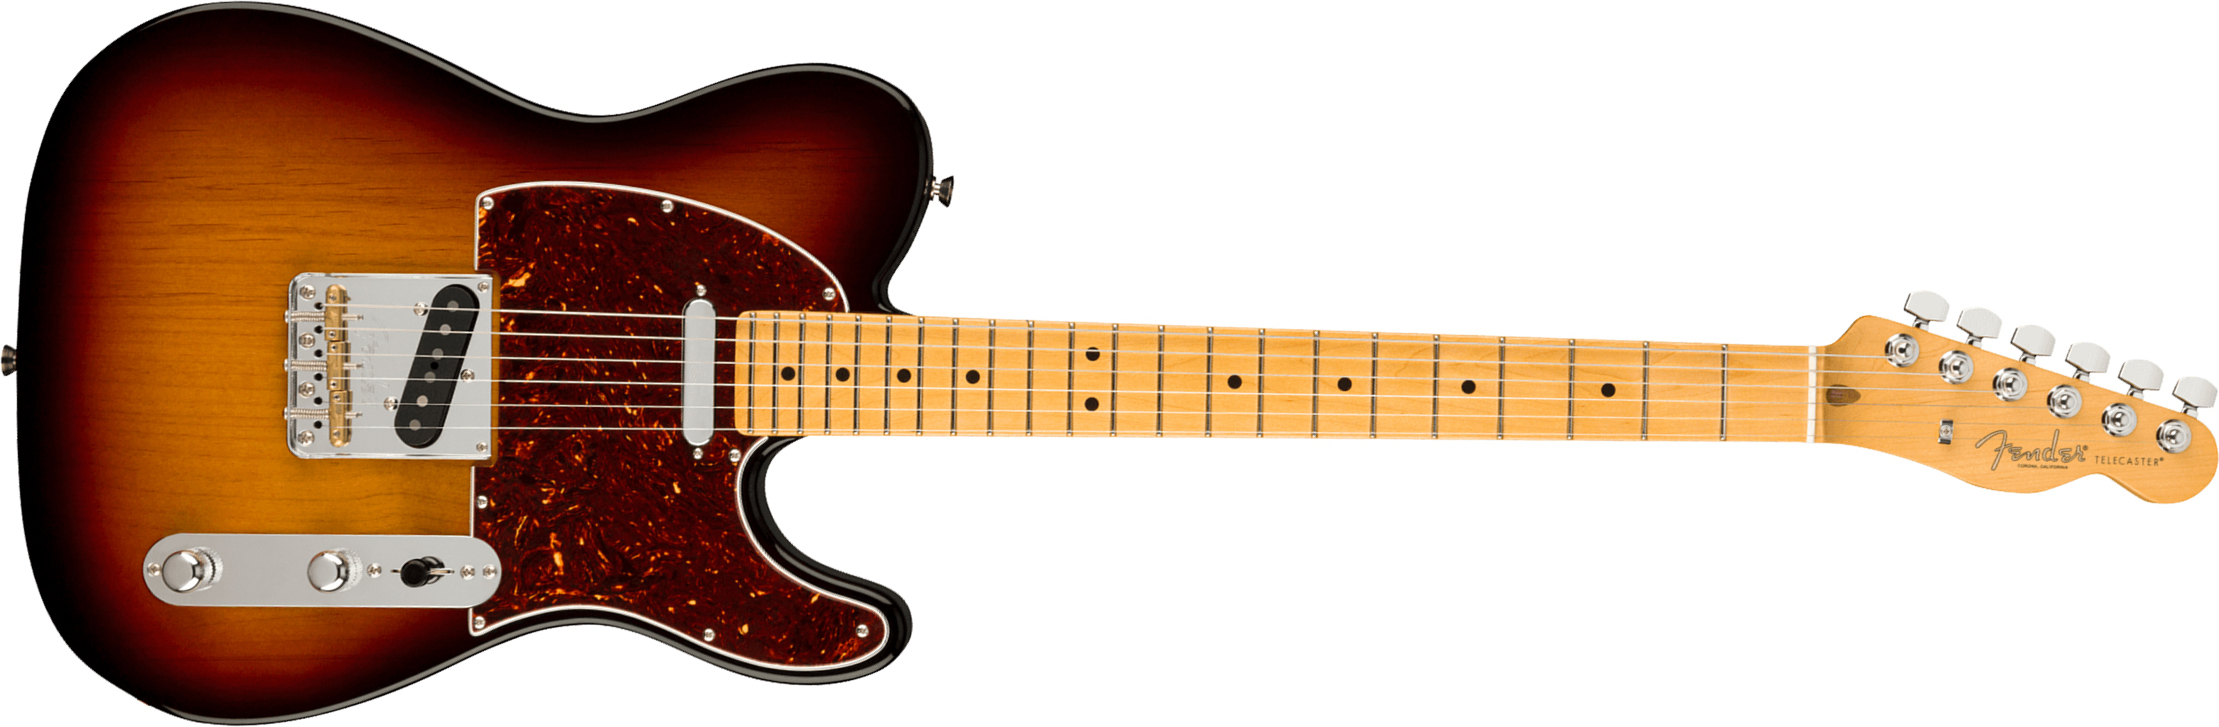 Fender Tele American Professional Ii Usa Mn - 3-color Sunburst - E-Gitarre in Teleform - Main picture